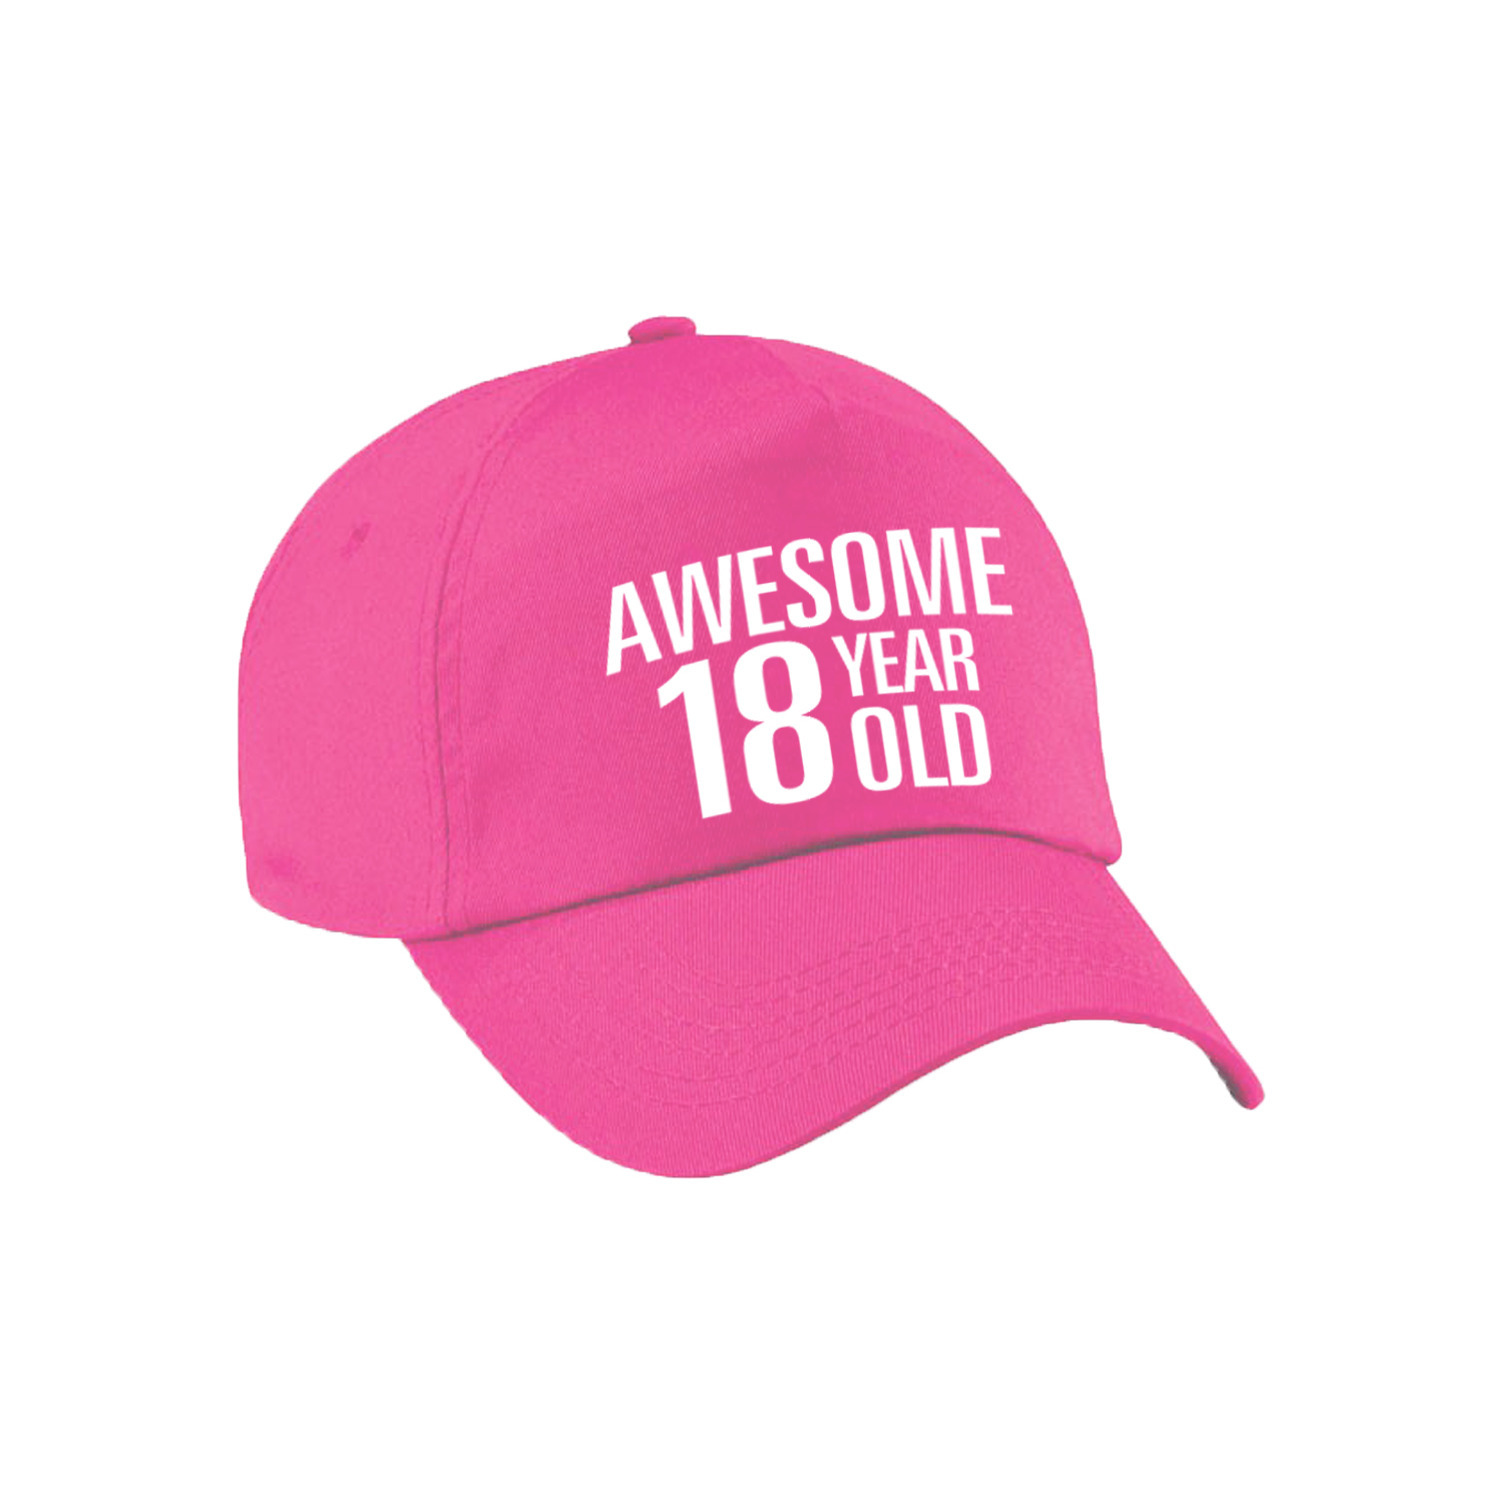 Awesome 18 year old verjaardag pet / cap roze voor dames en heren